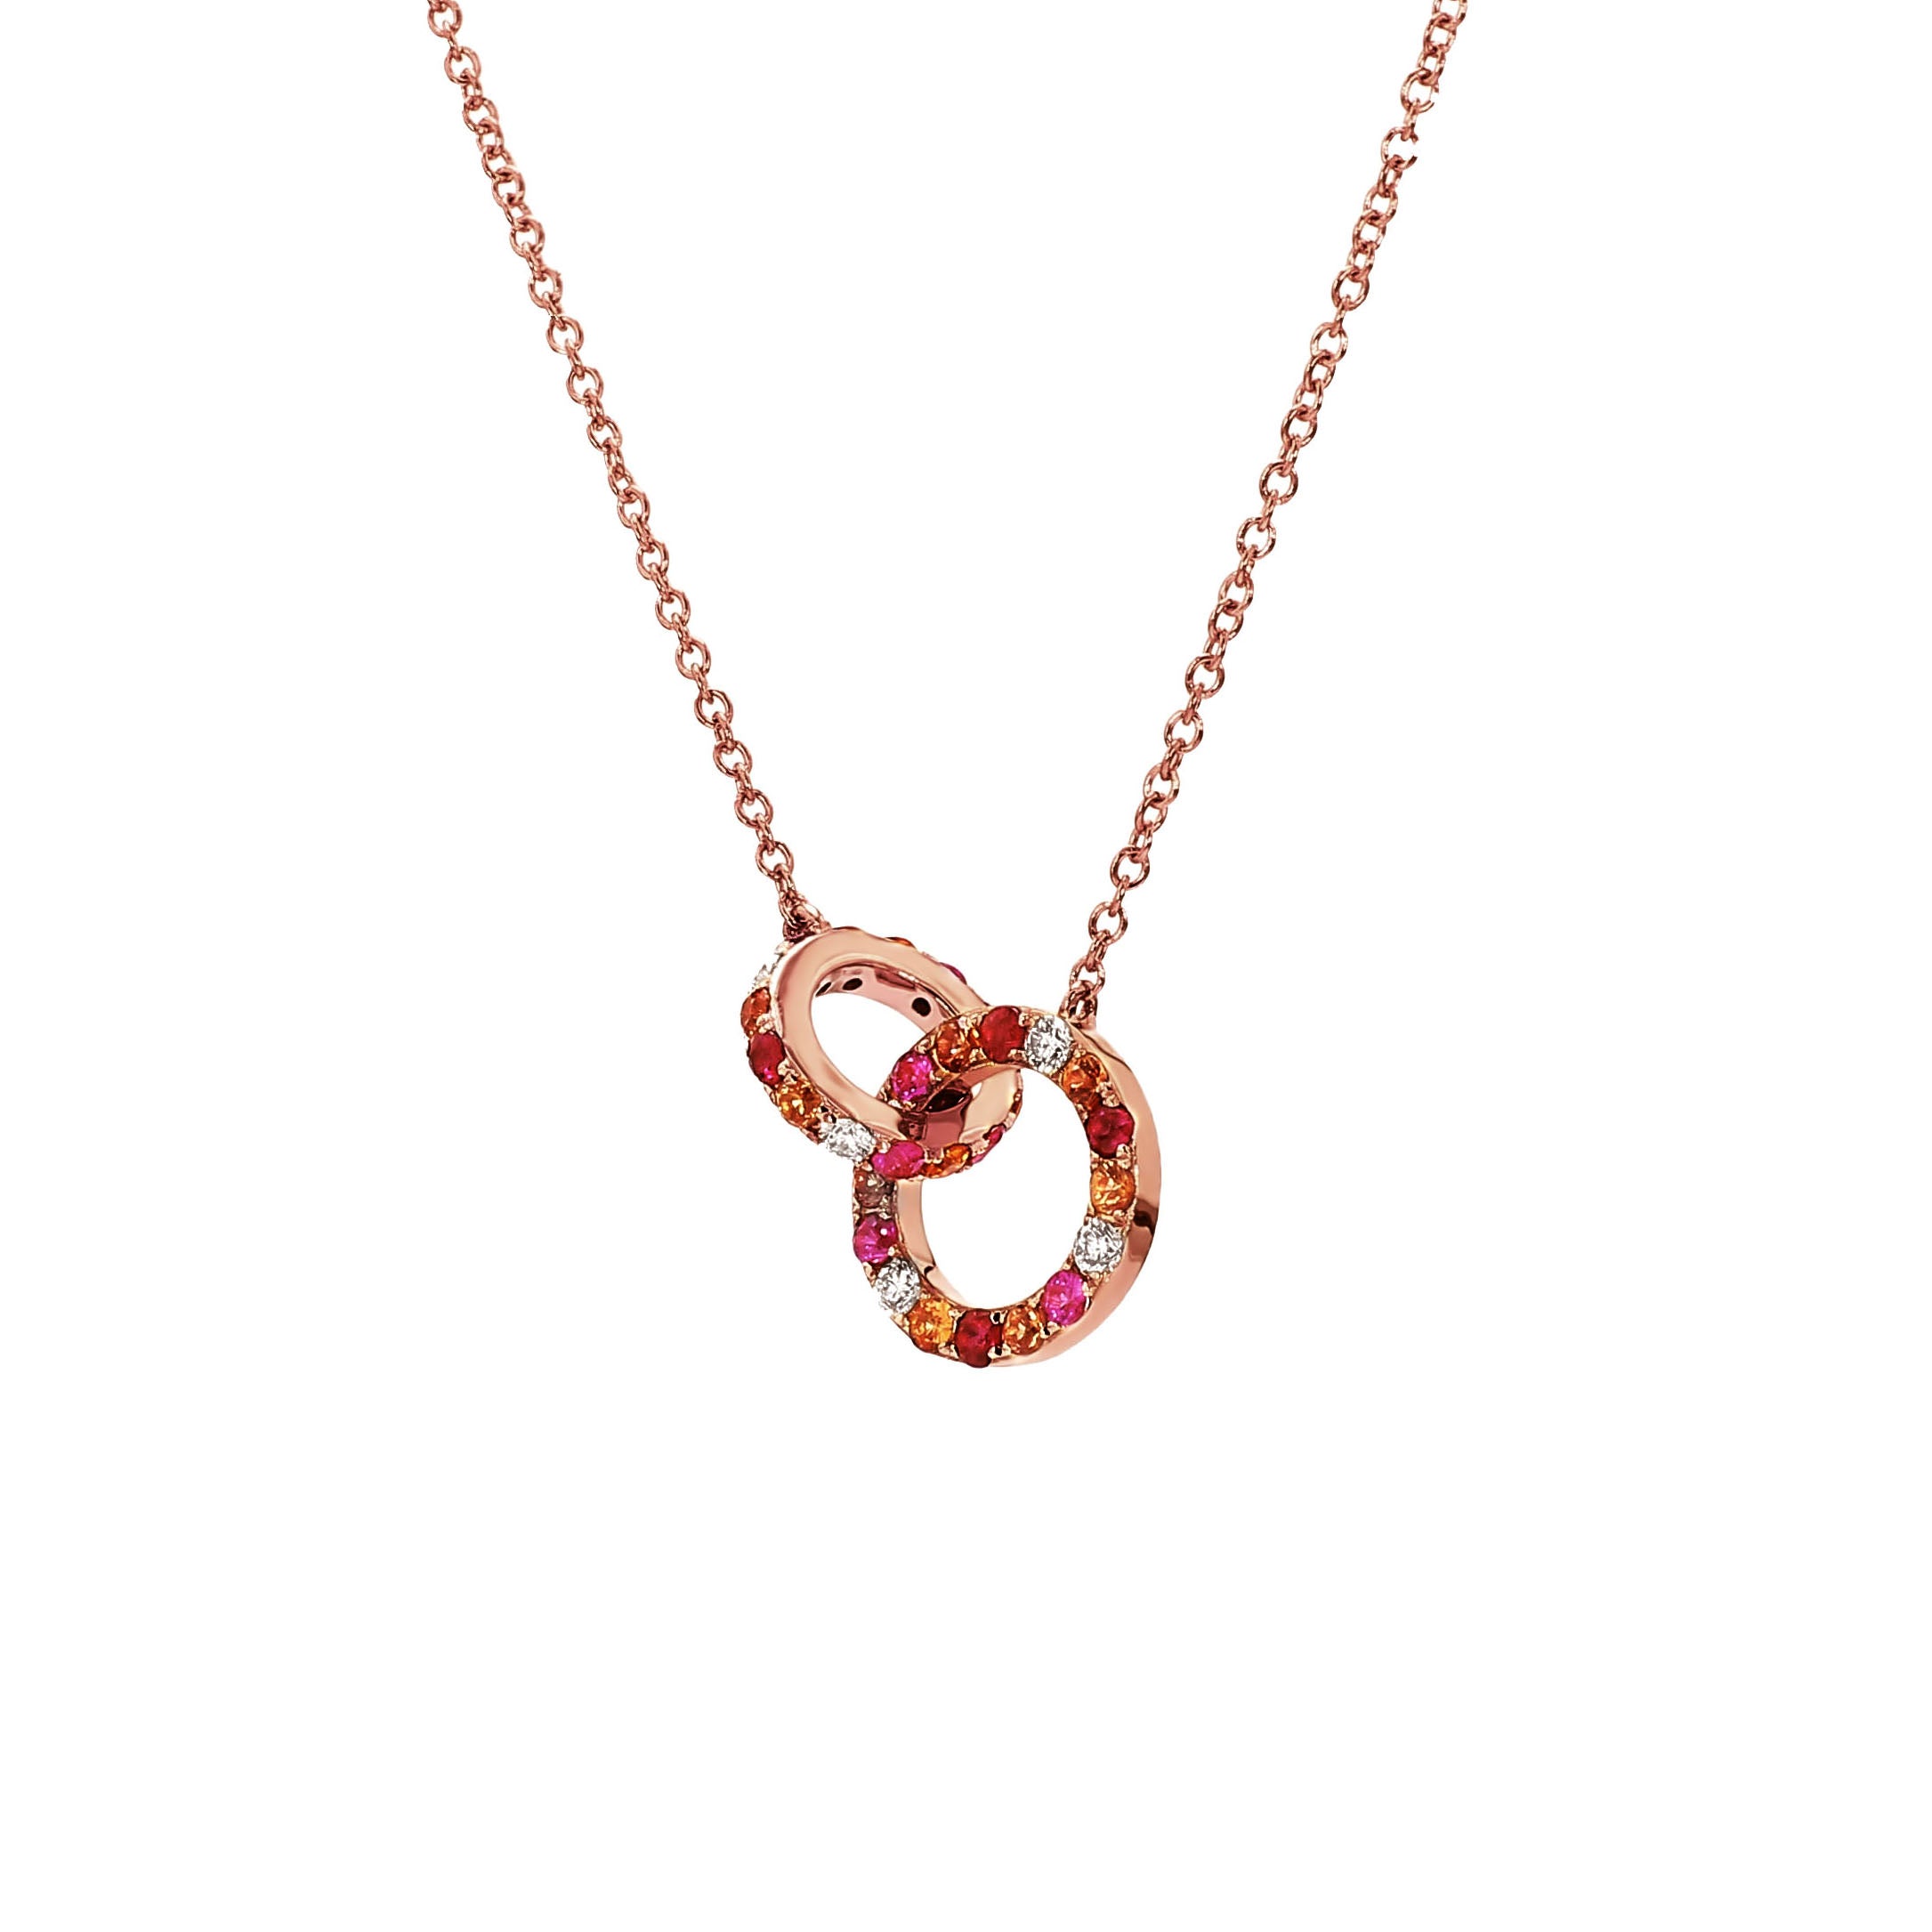 Buy Appealing Diamond Jewellery Set in 14KT Rose Gold Online | ORRA